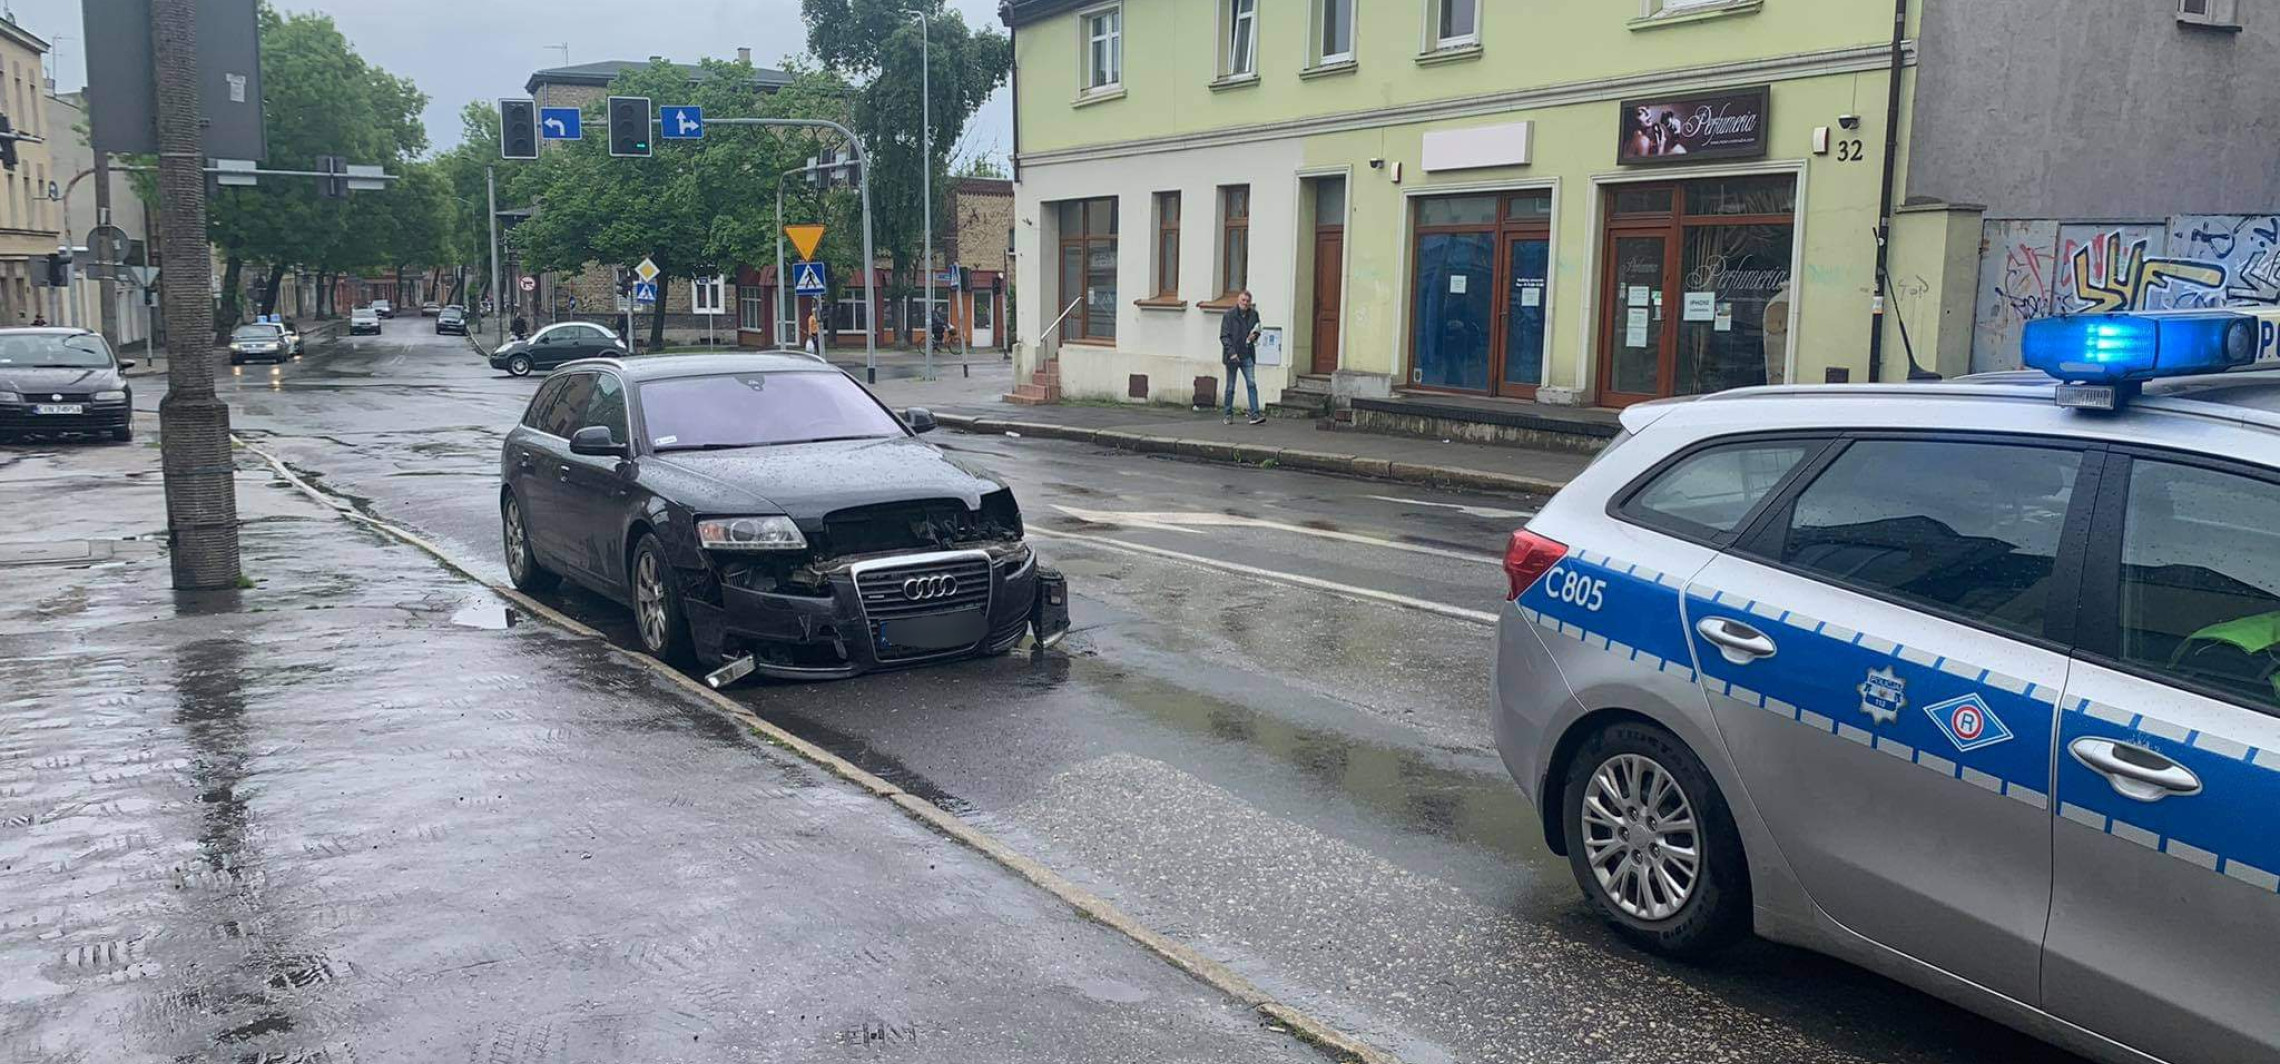 Inowrocław - Zderzenie dwóch aut na ulicy Świętego Ducha